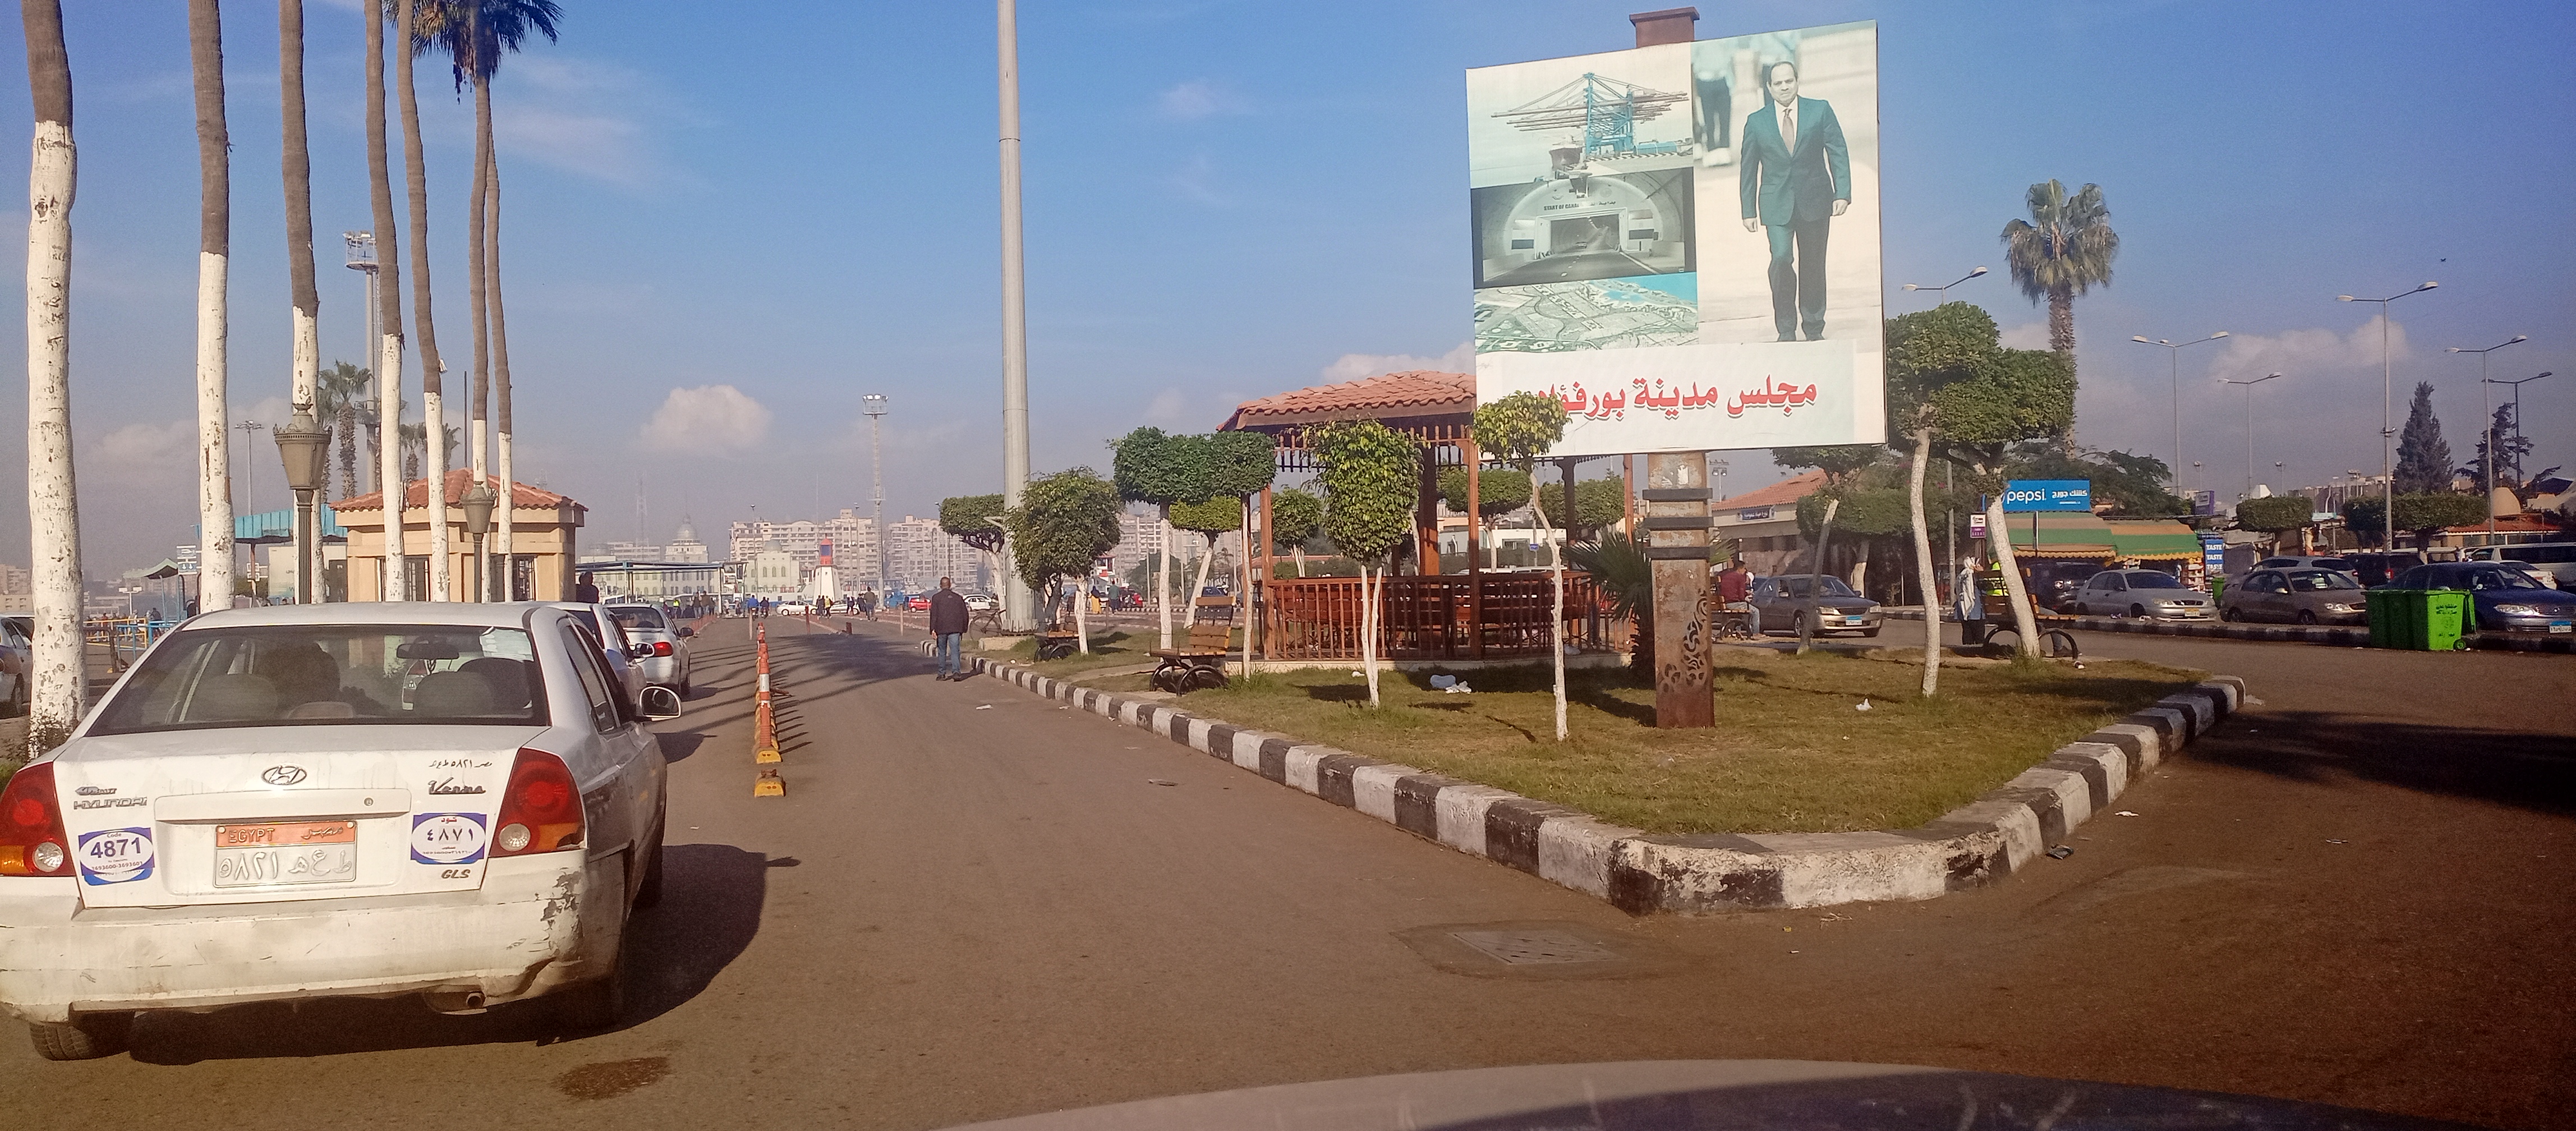 مدخل مدينة بورفؤاد وسيارات متجهة إلى بورسعيد